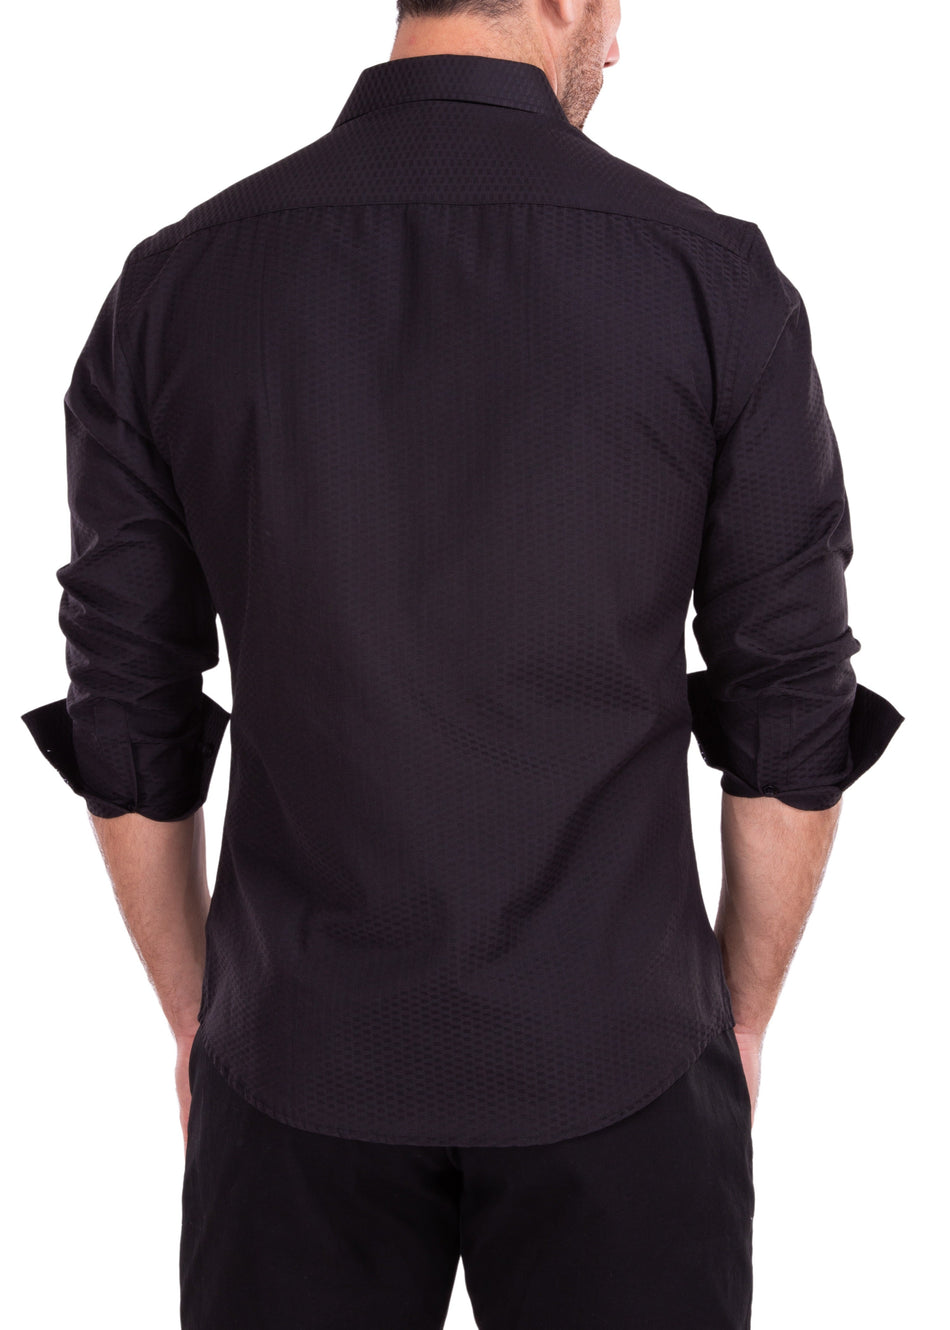 222227 - Black Button Up Long Sleeve Dress Shirt